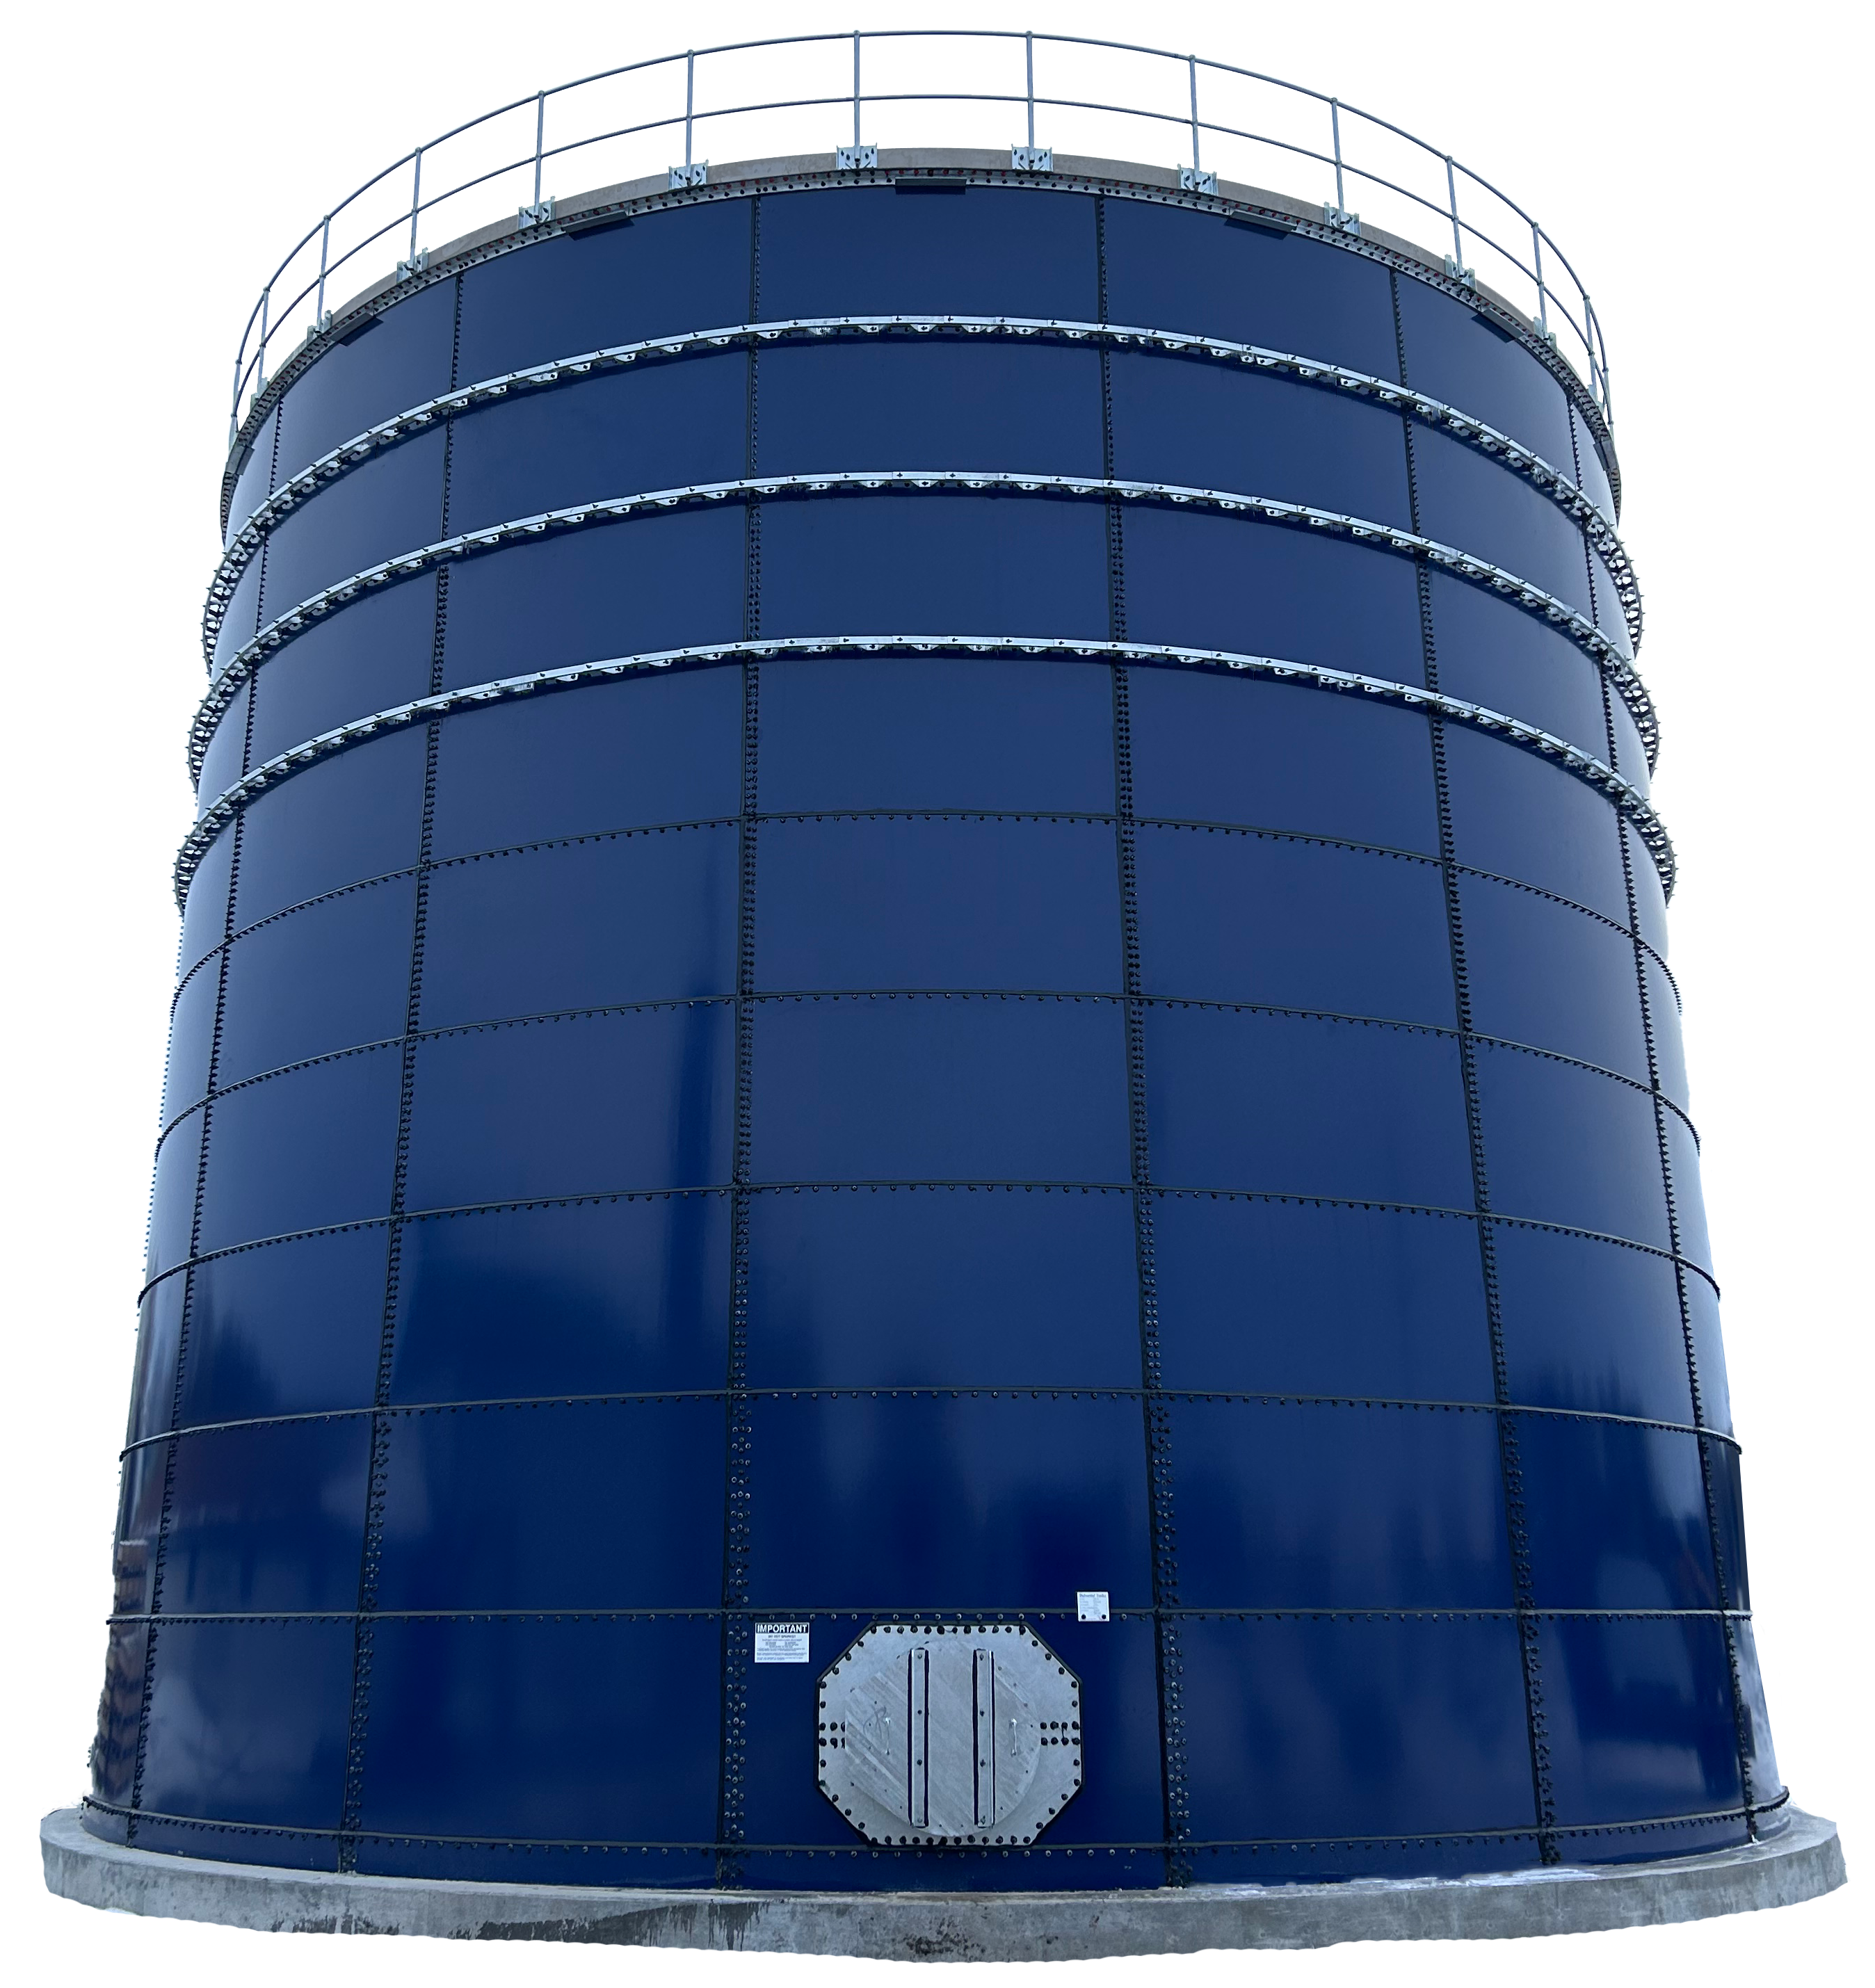 Vertical Liquid Storage Tanks